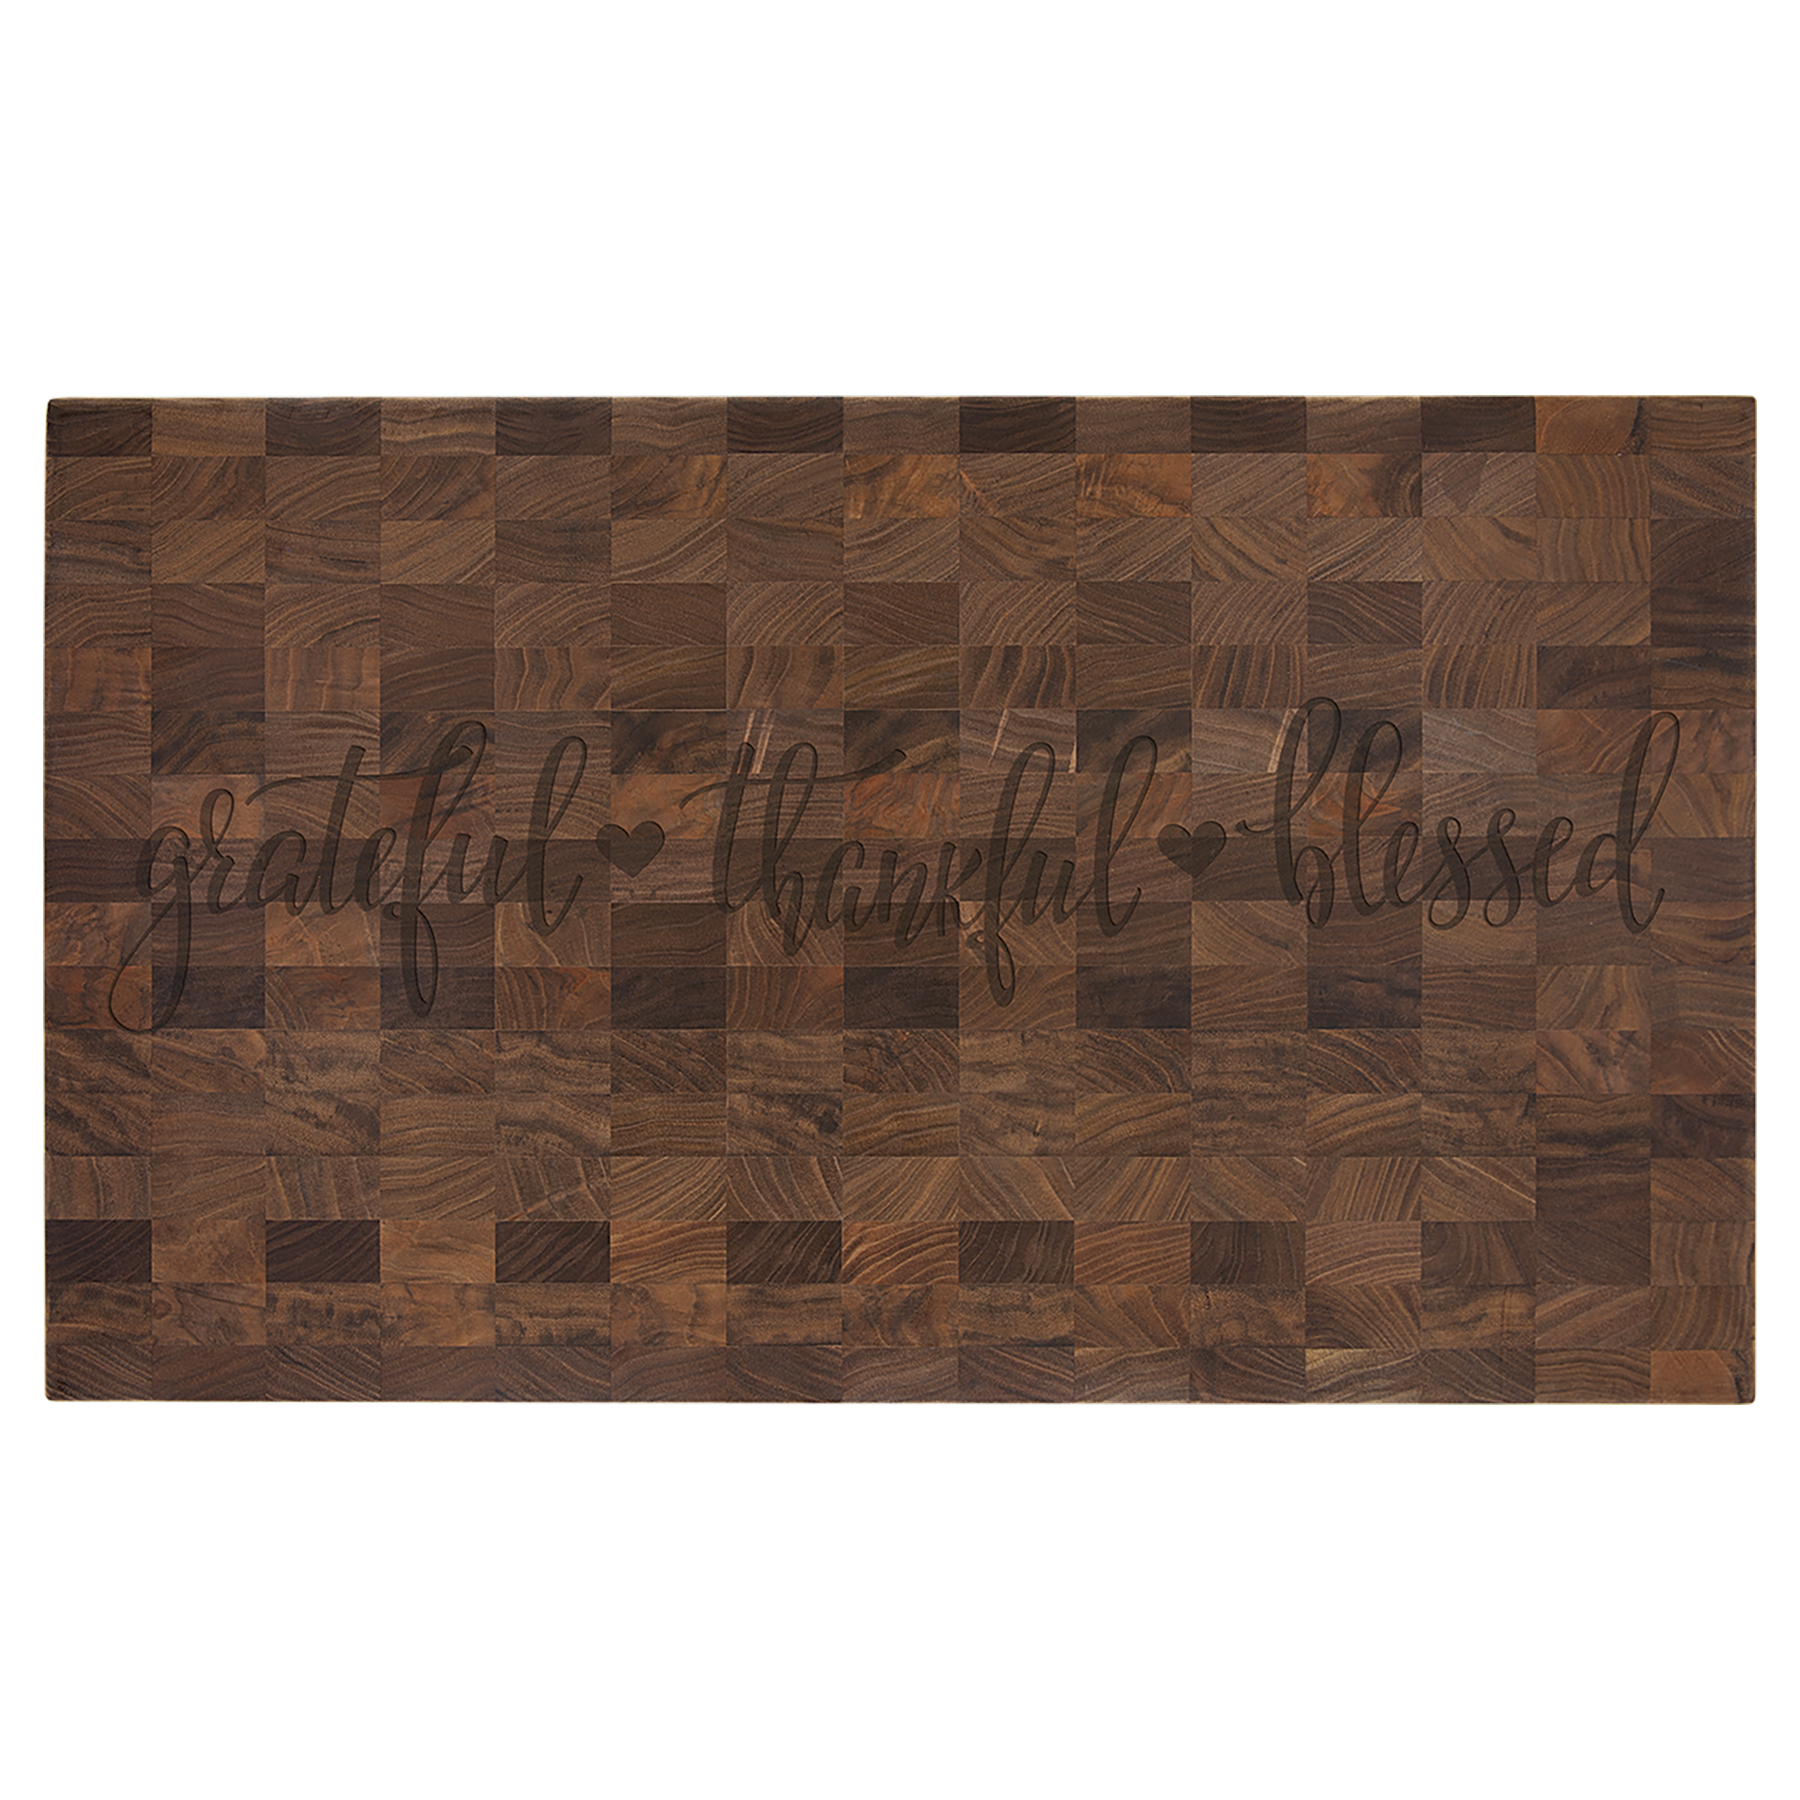 Walnut Butcher Block Cutting Board, 22" x 13" x 1-3/8" - Craftworks NW, LLC